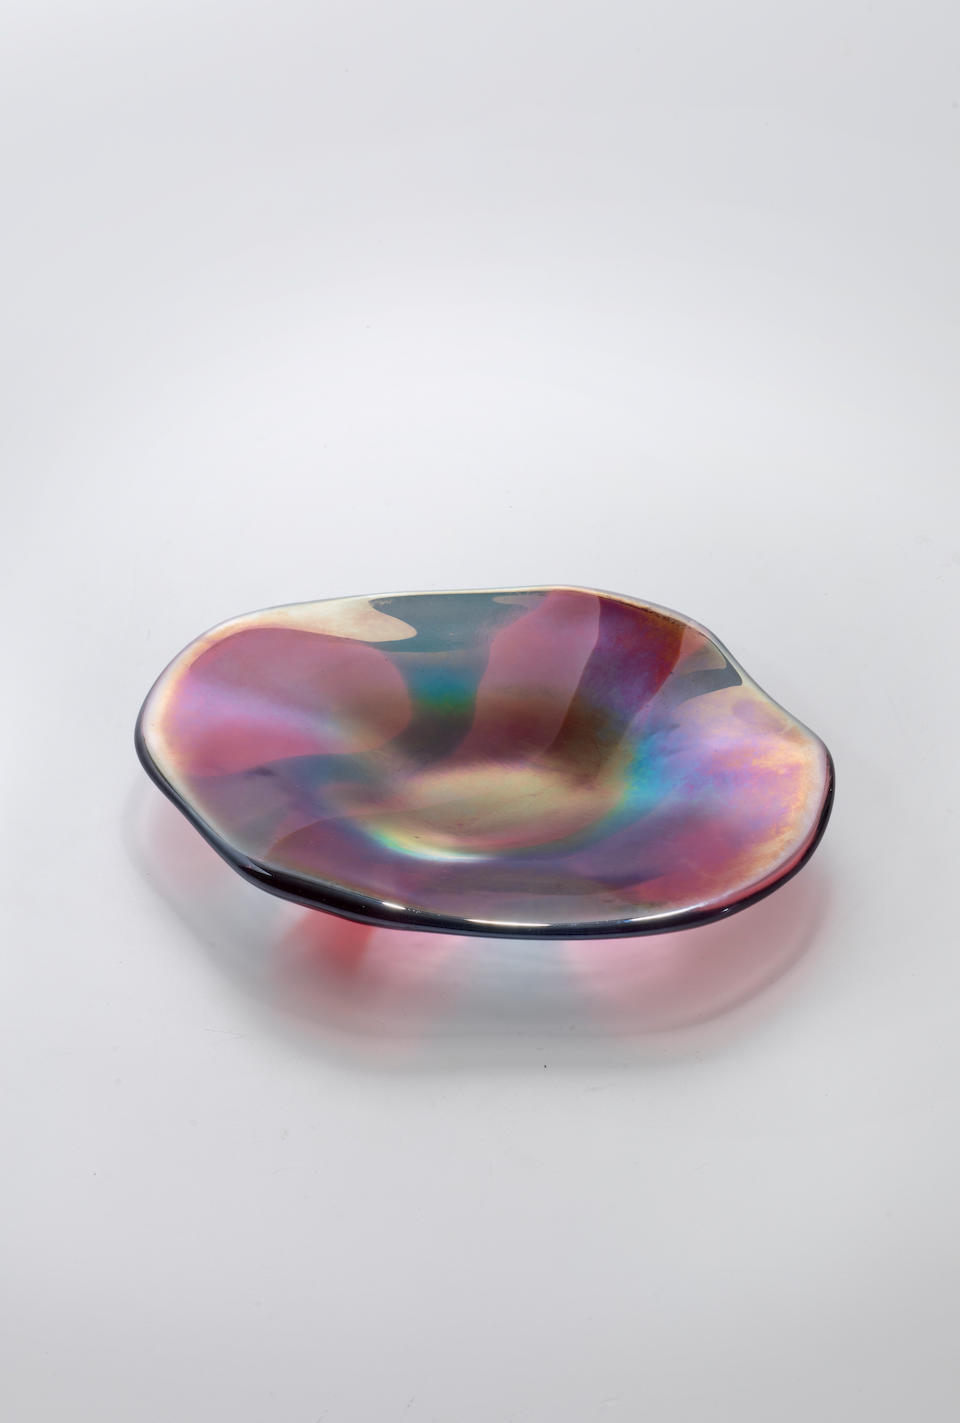 Carlo Scarpa (1906-1978) Rare A Macchie Dish1942model no. 4476, for Venini, hand-blown iridescent and polychrome glass, acid etched stencil 'venini murano ITALIA'height 1 1/4in (3cm); width 10 1/2in (26.5cm); depth 8 3/4in (22cm)